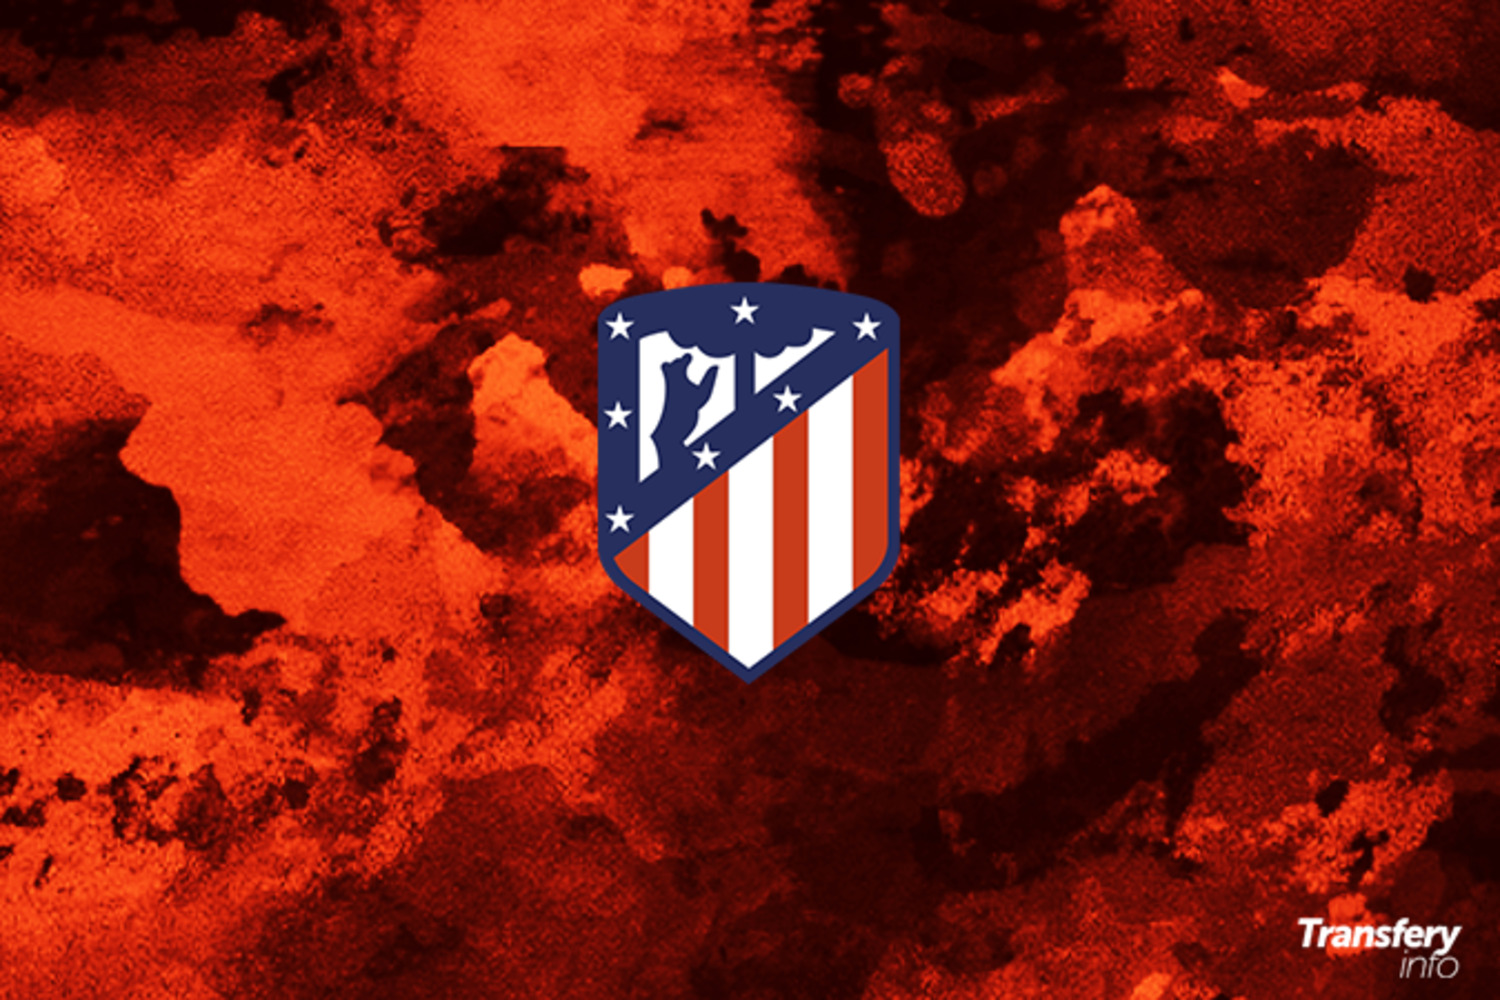 OFICJALNIE: Pierwszy transfer w historii Atlético Ottawa, klubu należącego do Atlético Madryt